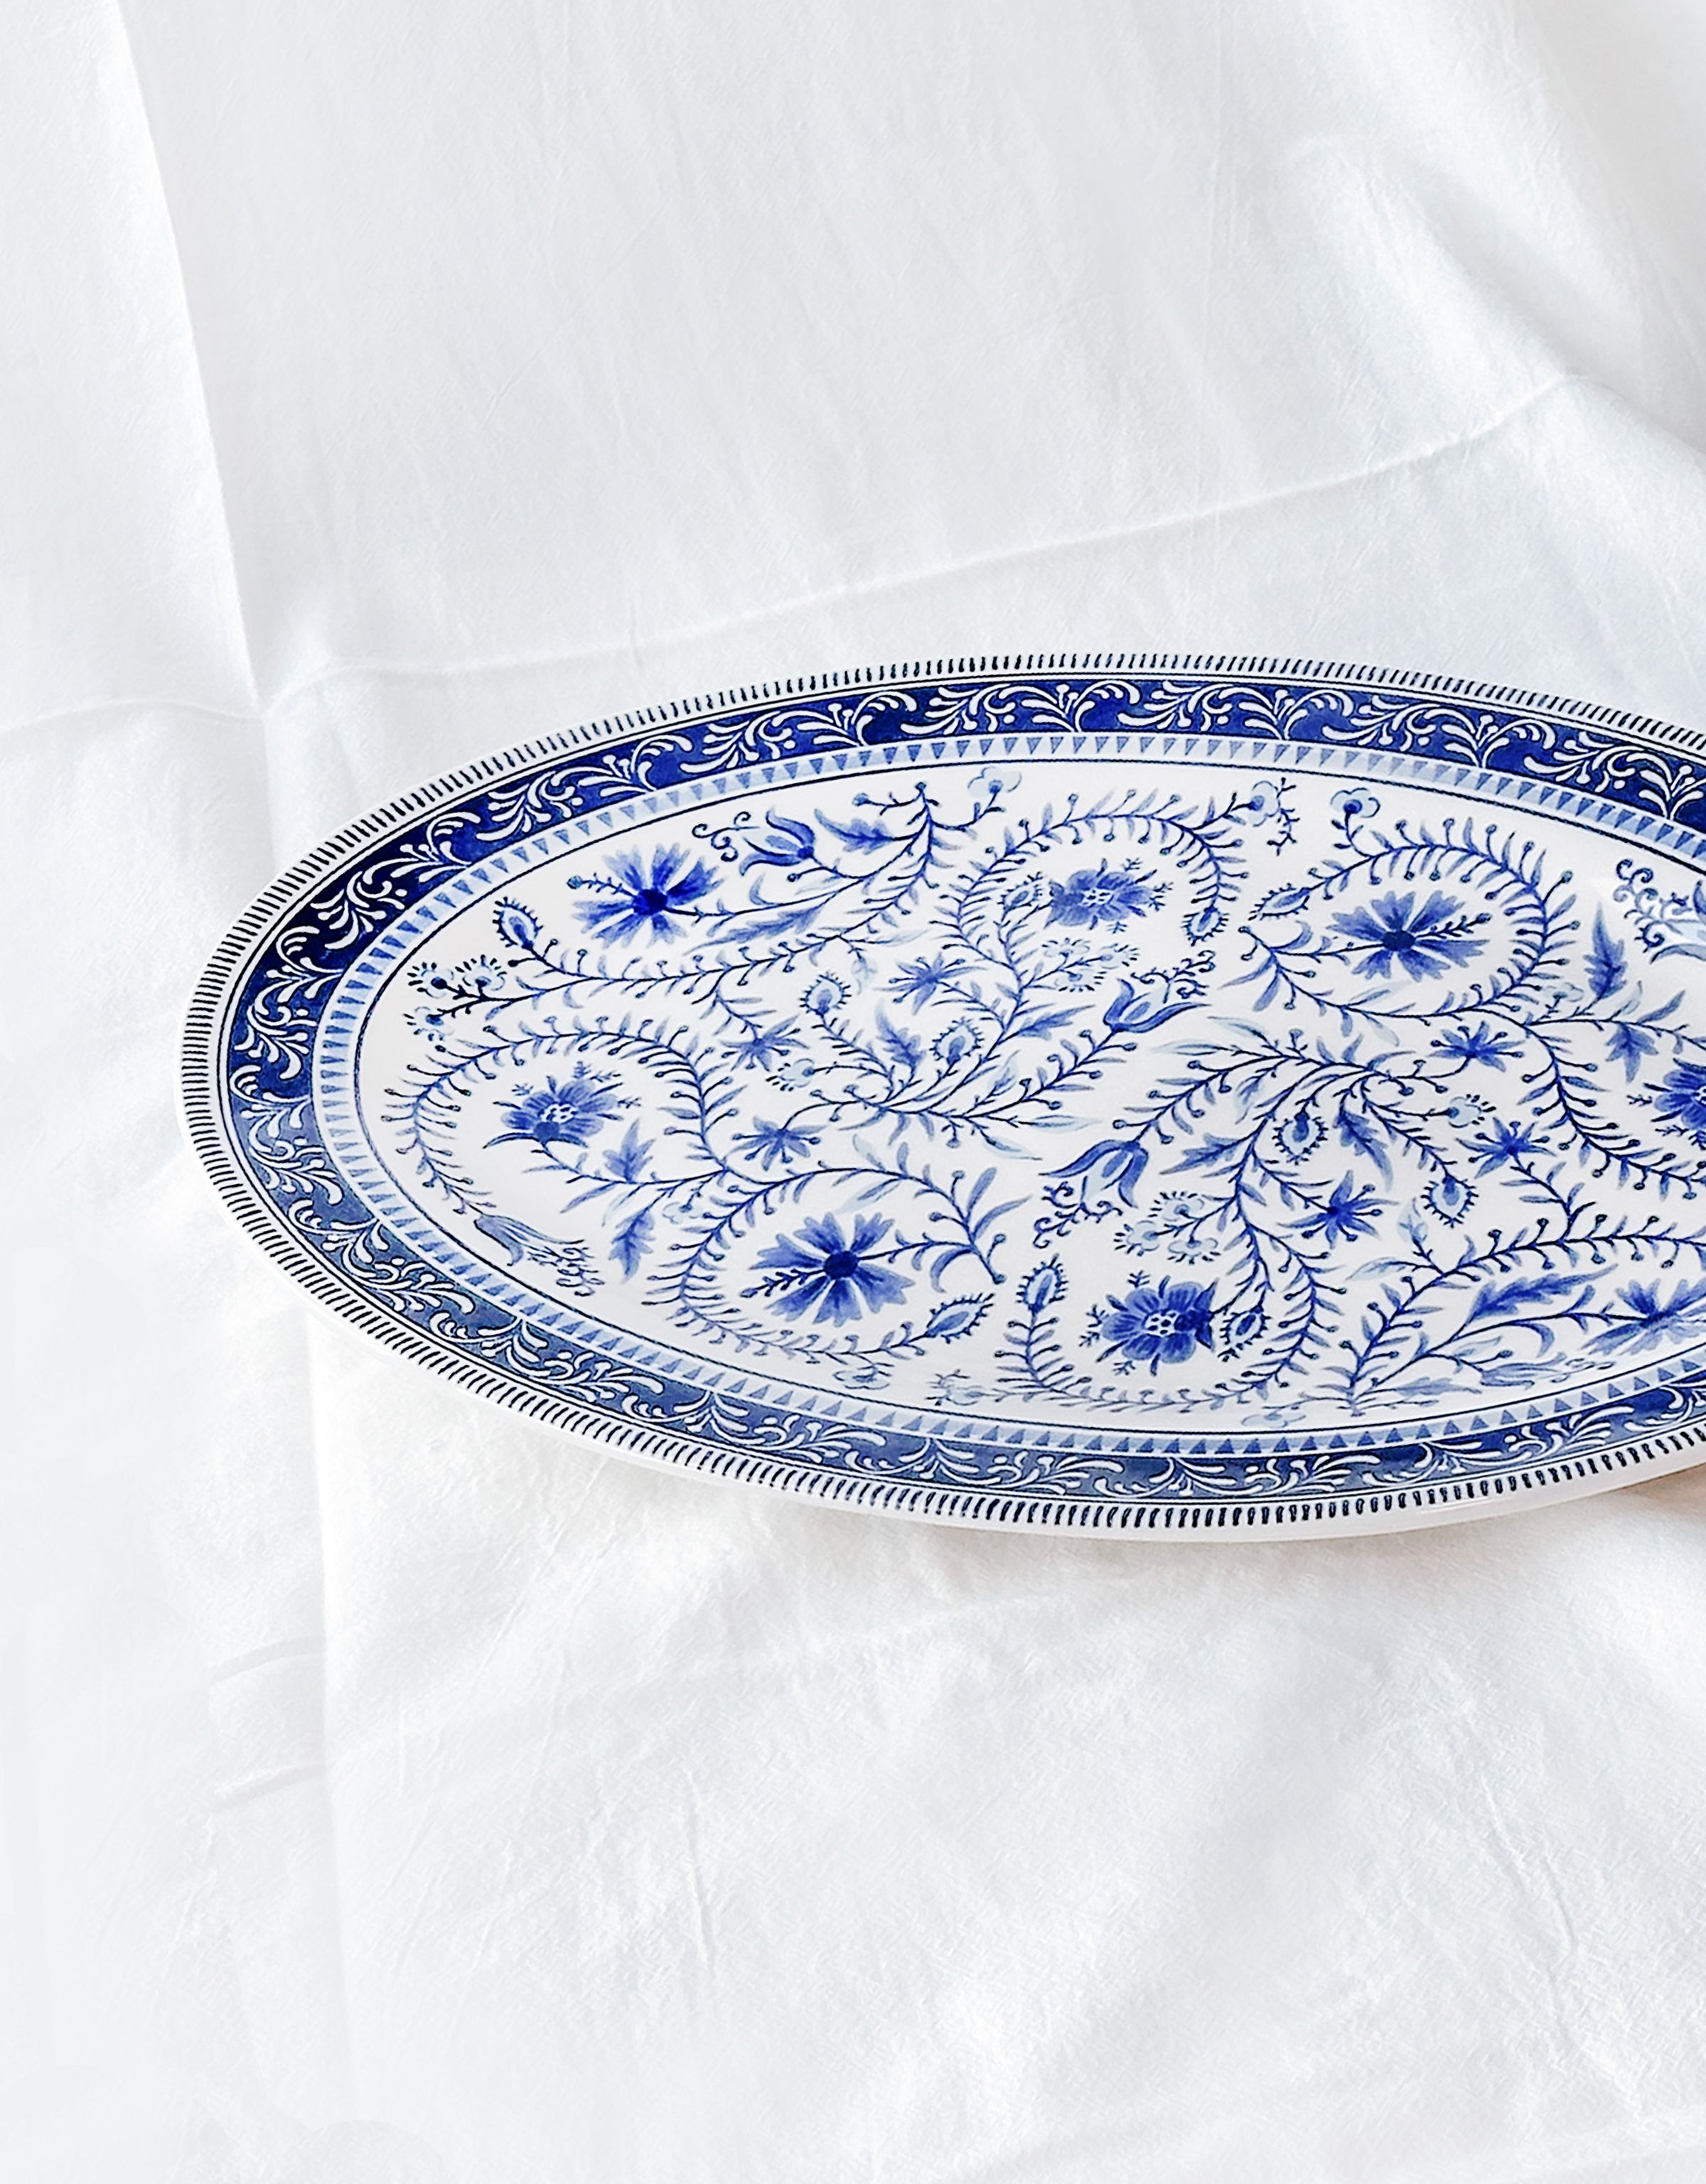 Blue Marrakesh Tile Floral Oval Serving Platter